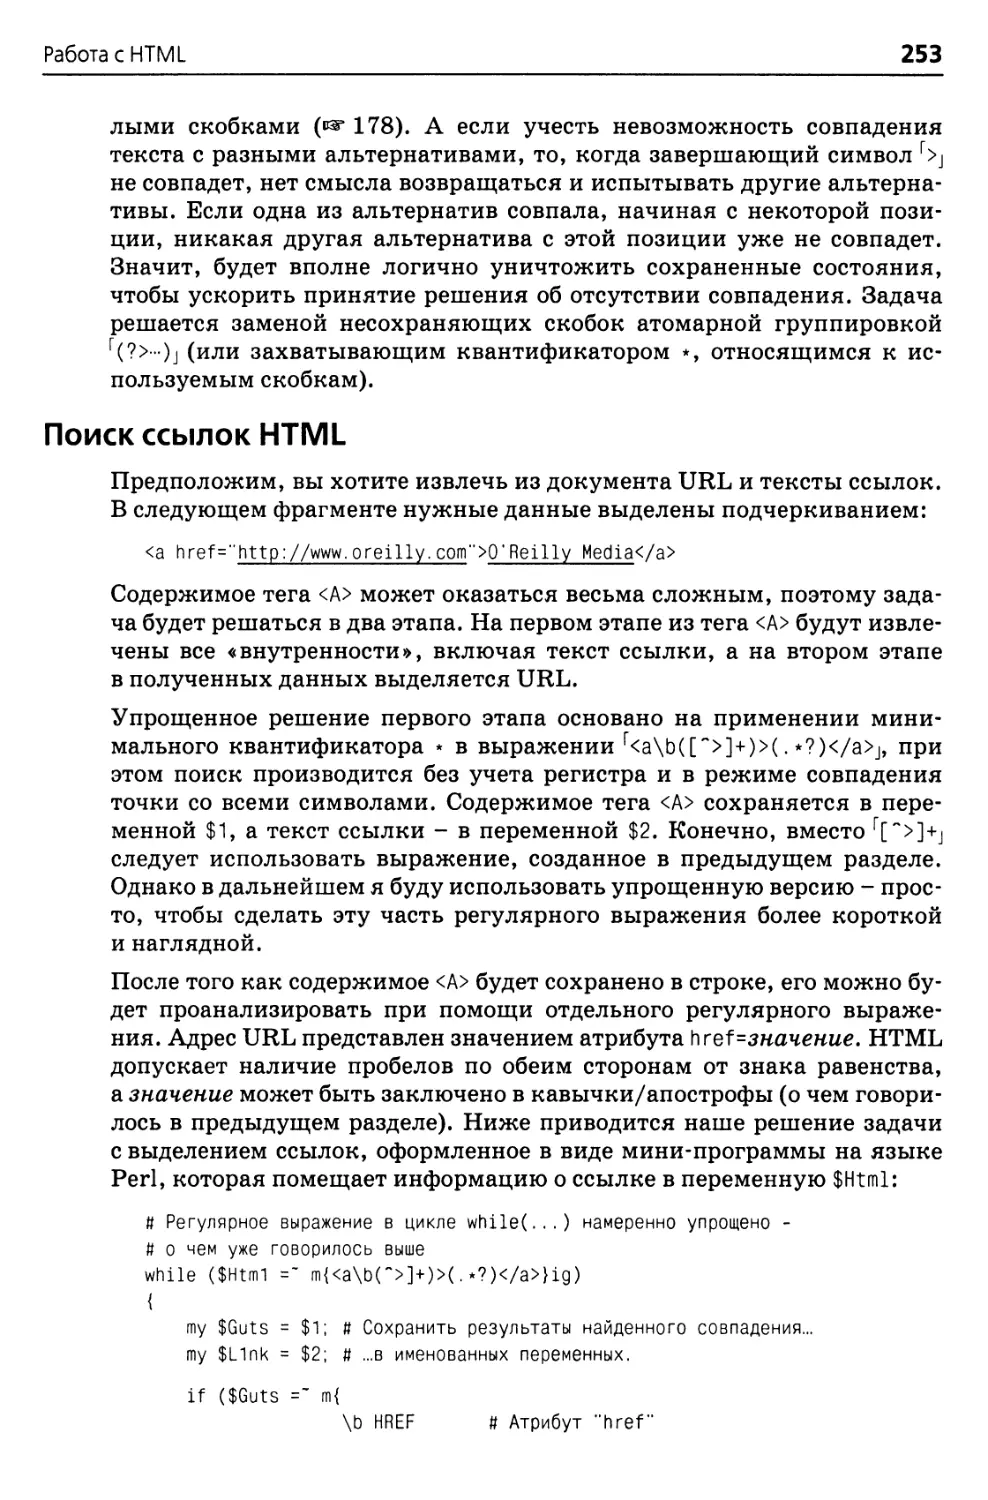 Поиск ссылок HTML